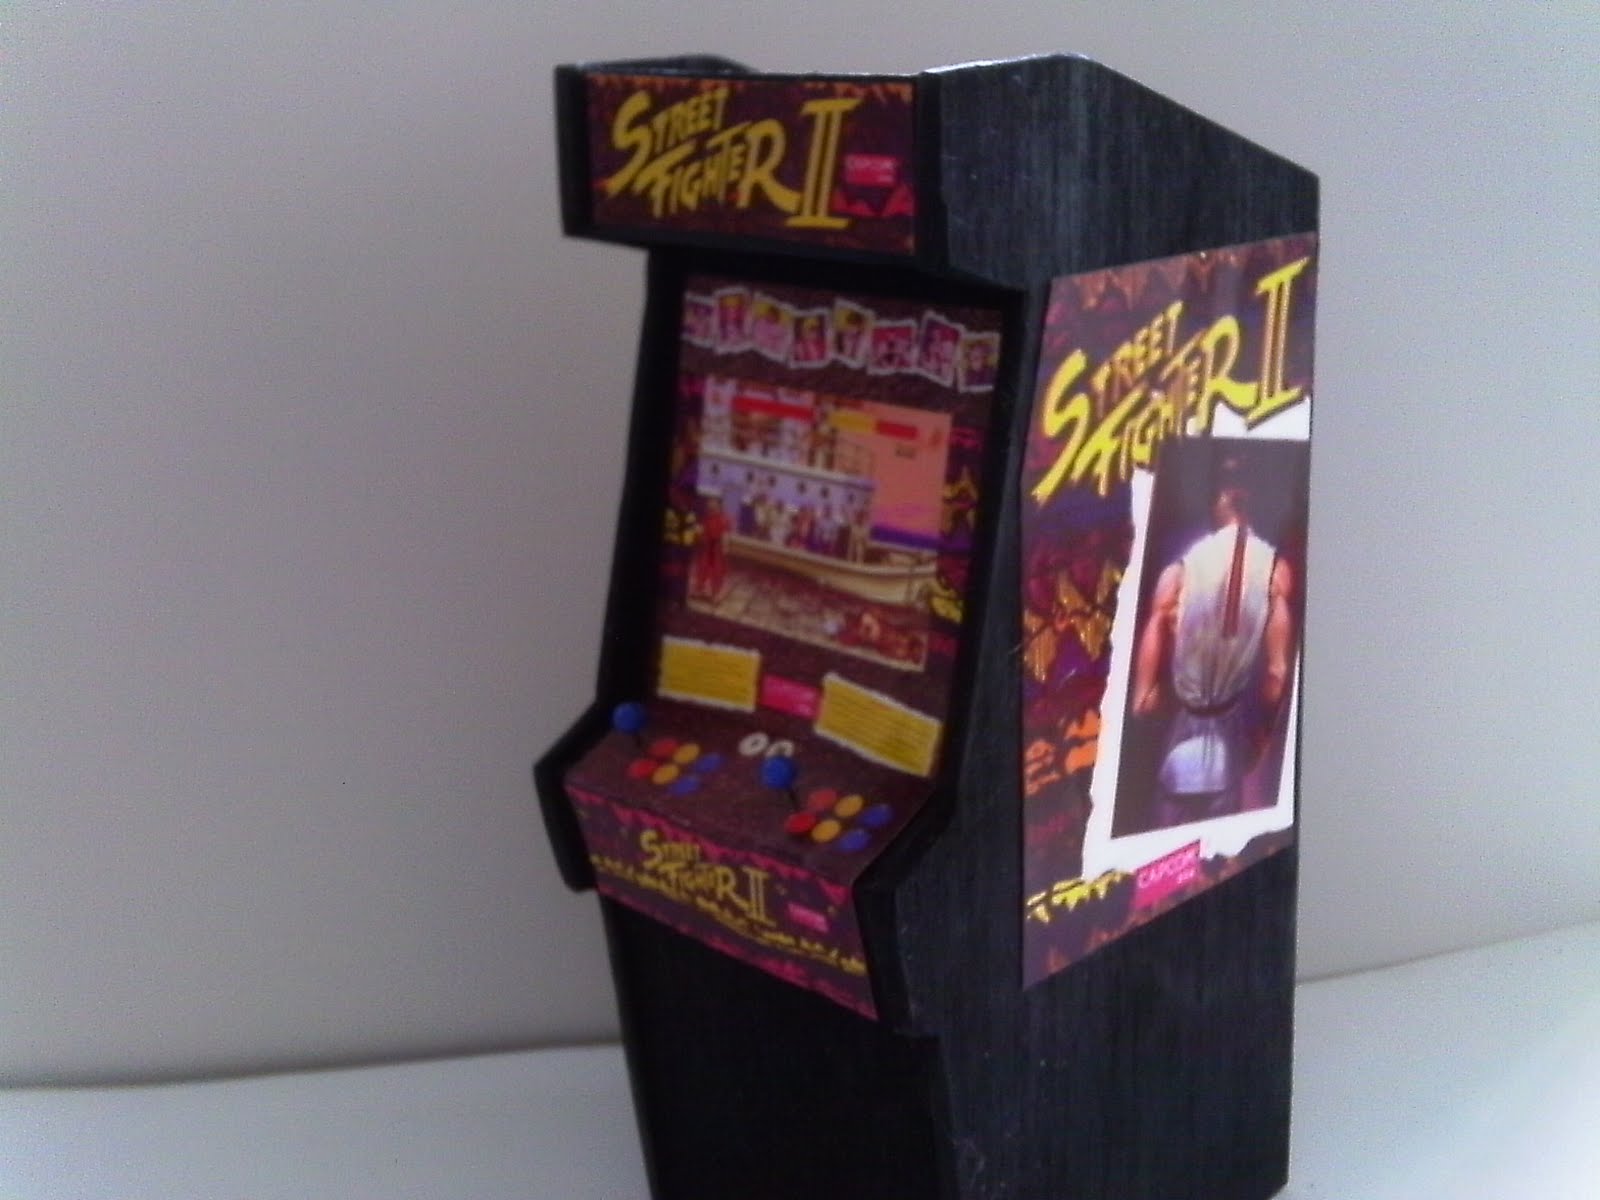 Retro Heart Street Fighter Ii Scale Arcade Model